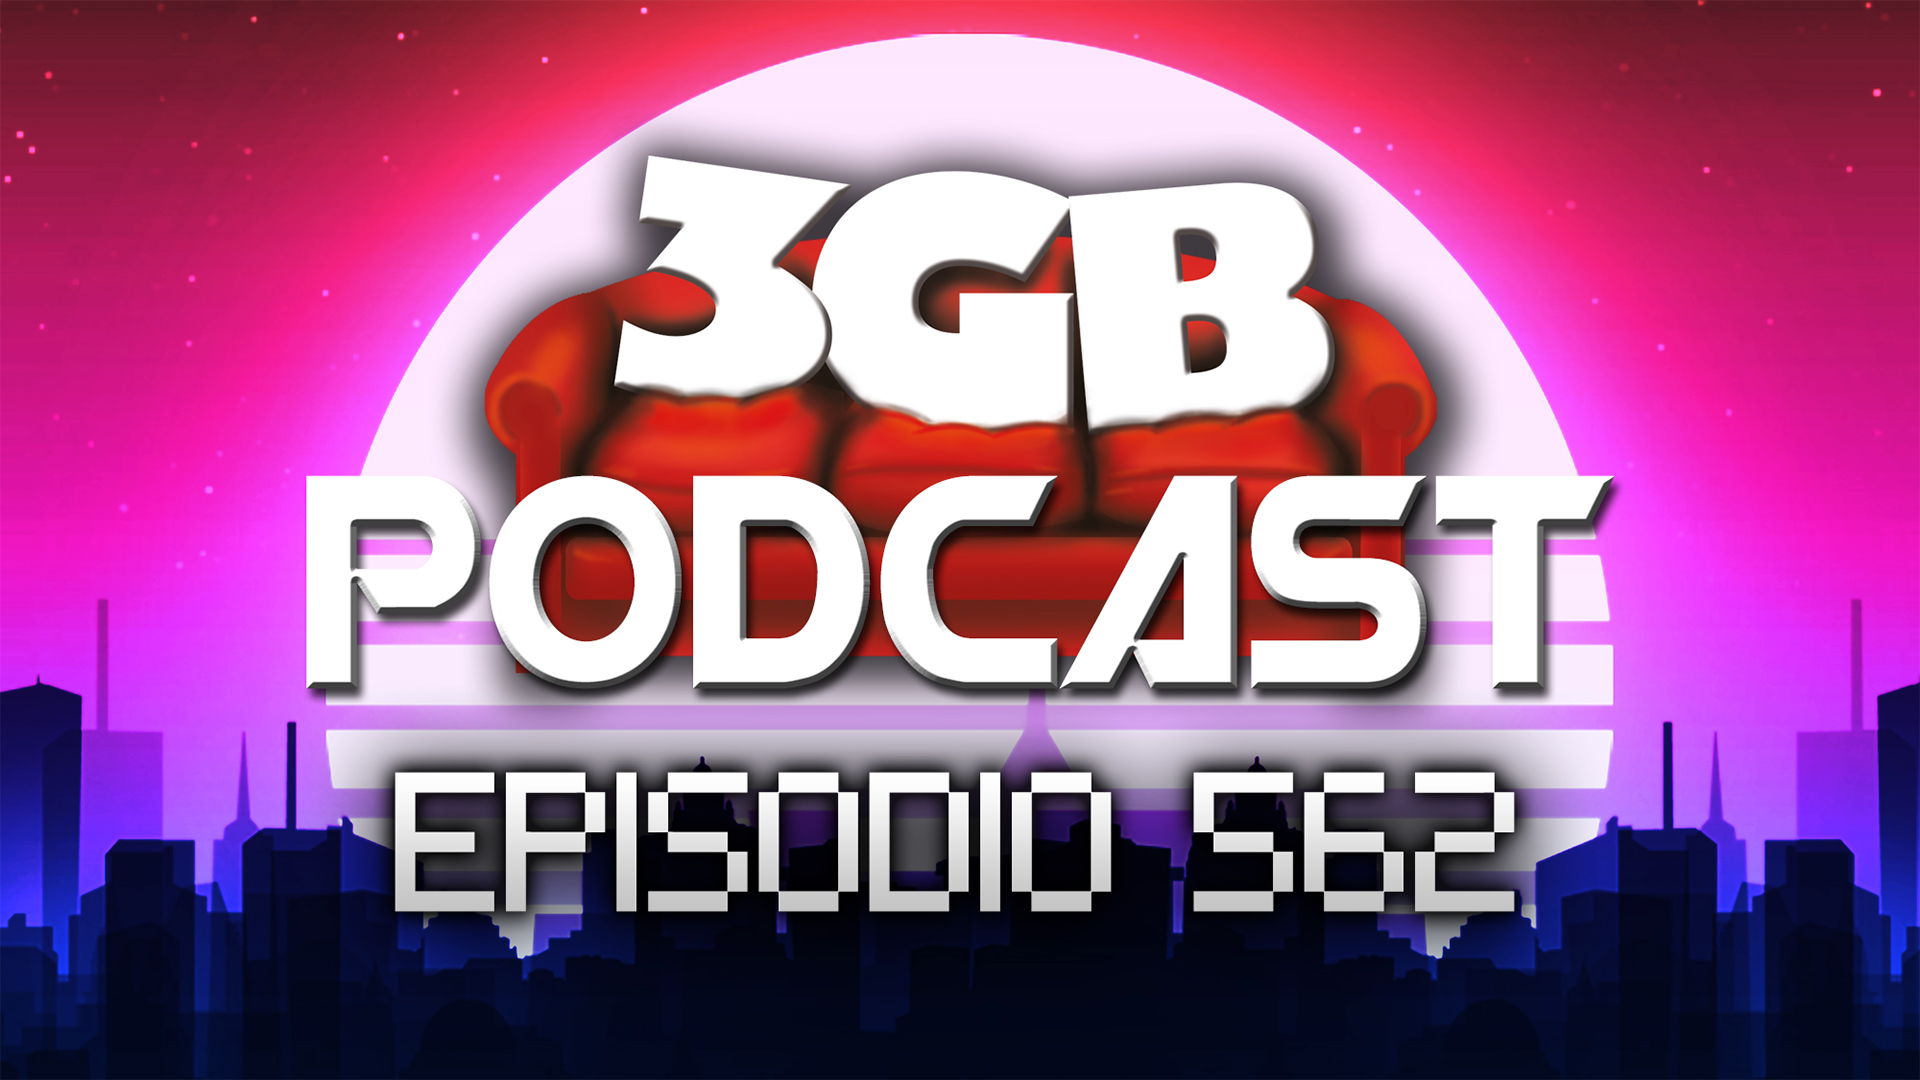 Podcast: Episodio 562, Horas Huecas